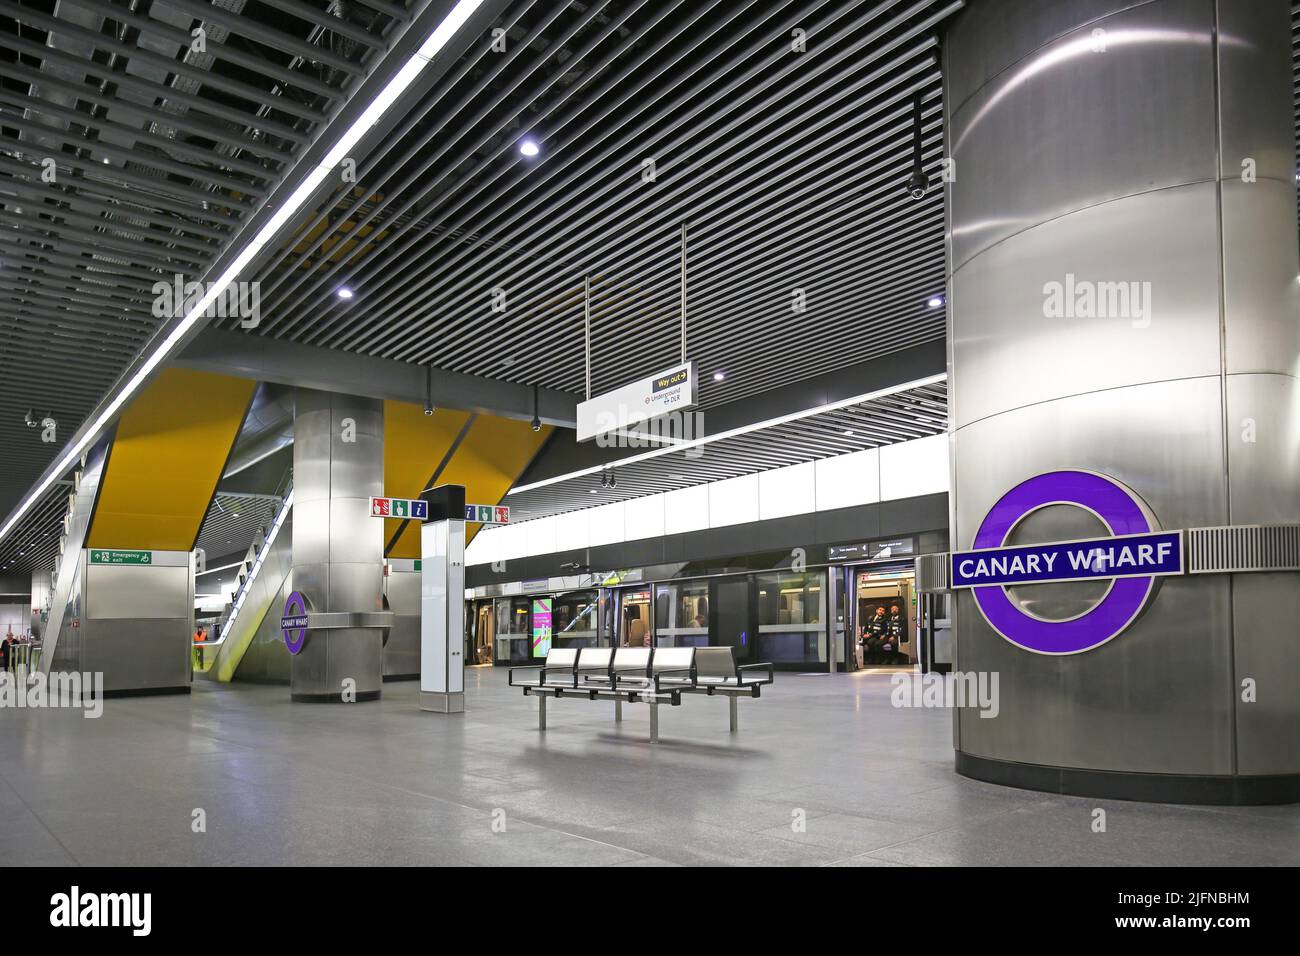 Londres, Royaume-Uni. Canary Wharf Station sur le réseau de métro Elizabeth Line (crossrail) récemment ouvert. Niveau de la plate-forme, montre les trains et les escaliers mécaniques. Banque D'Images